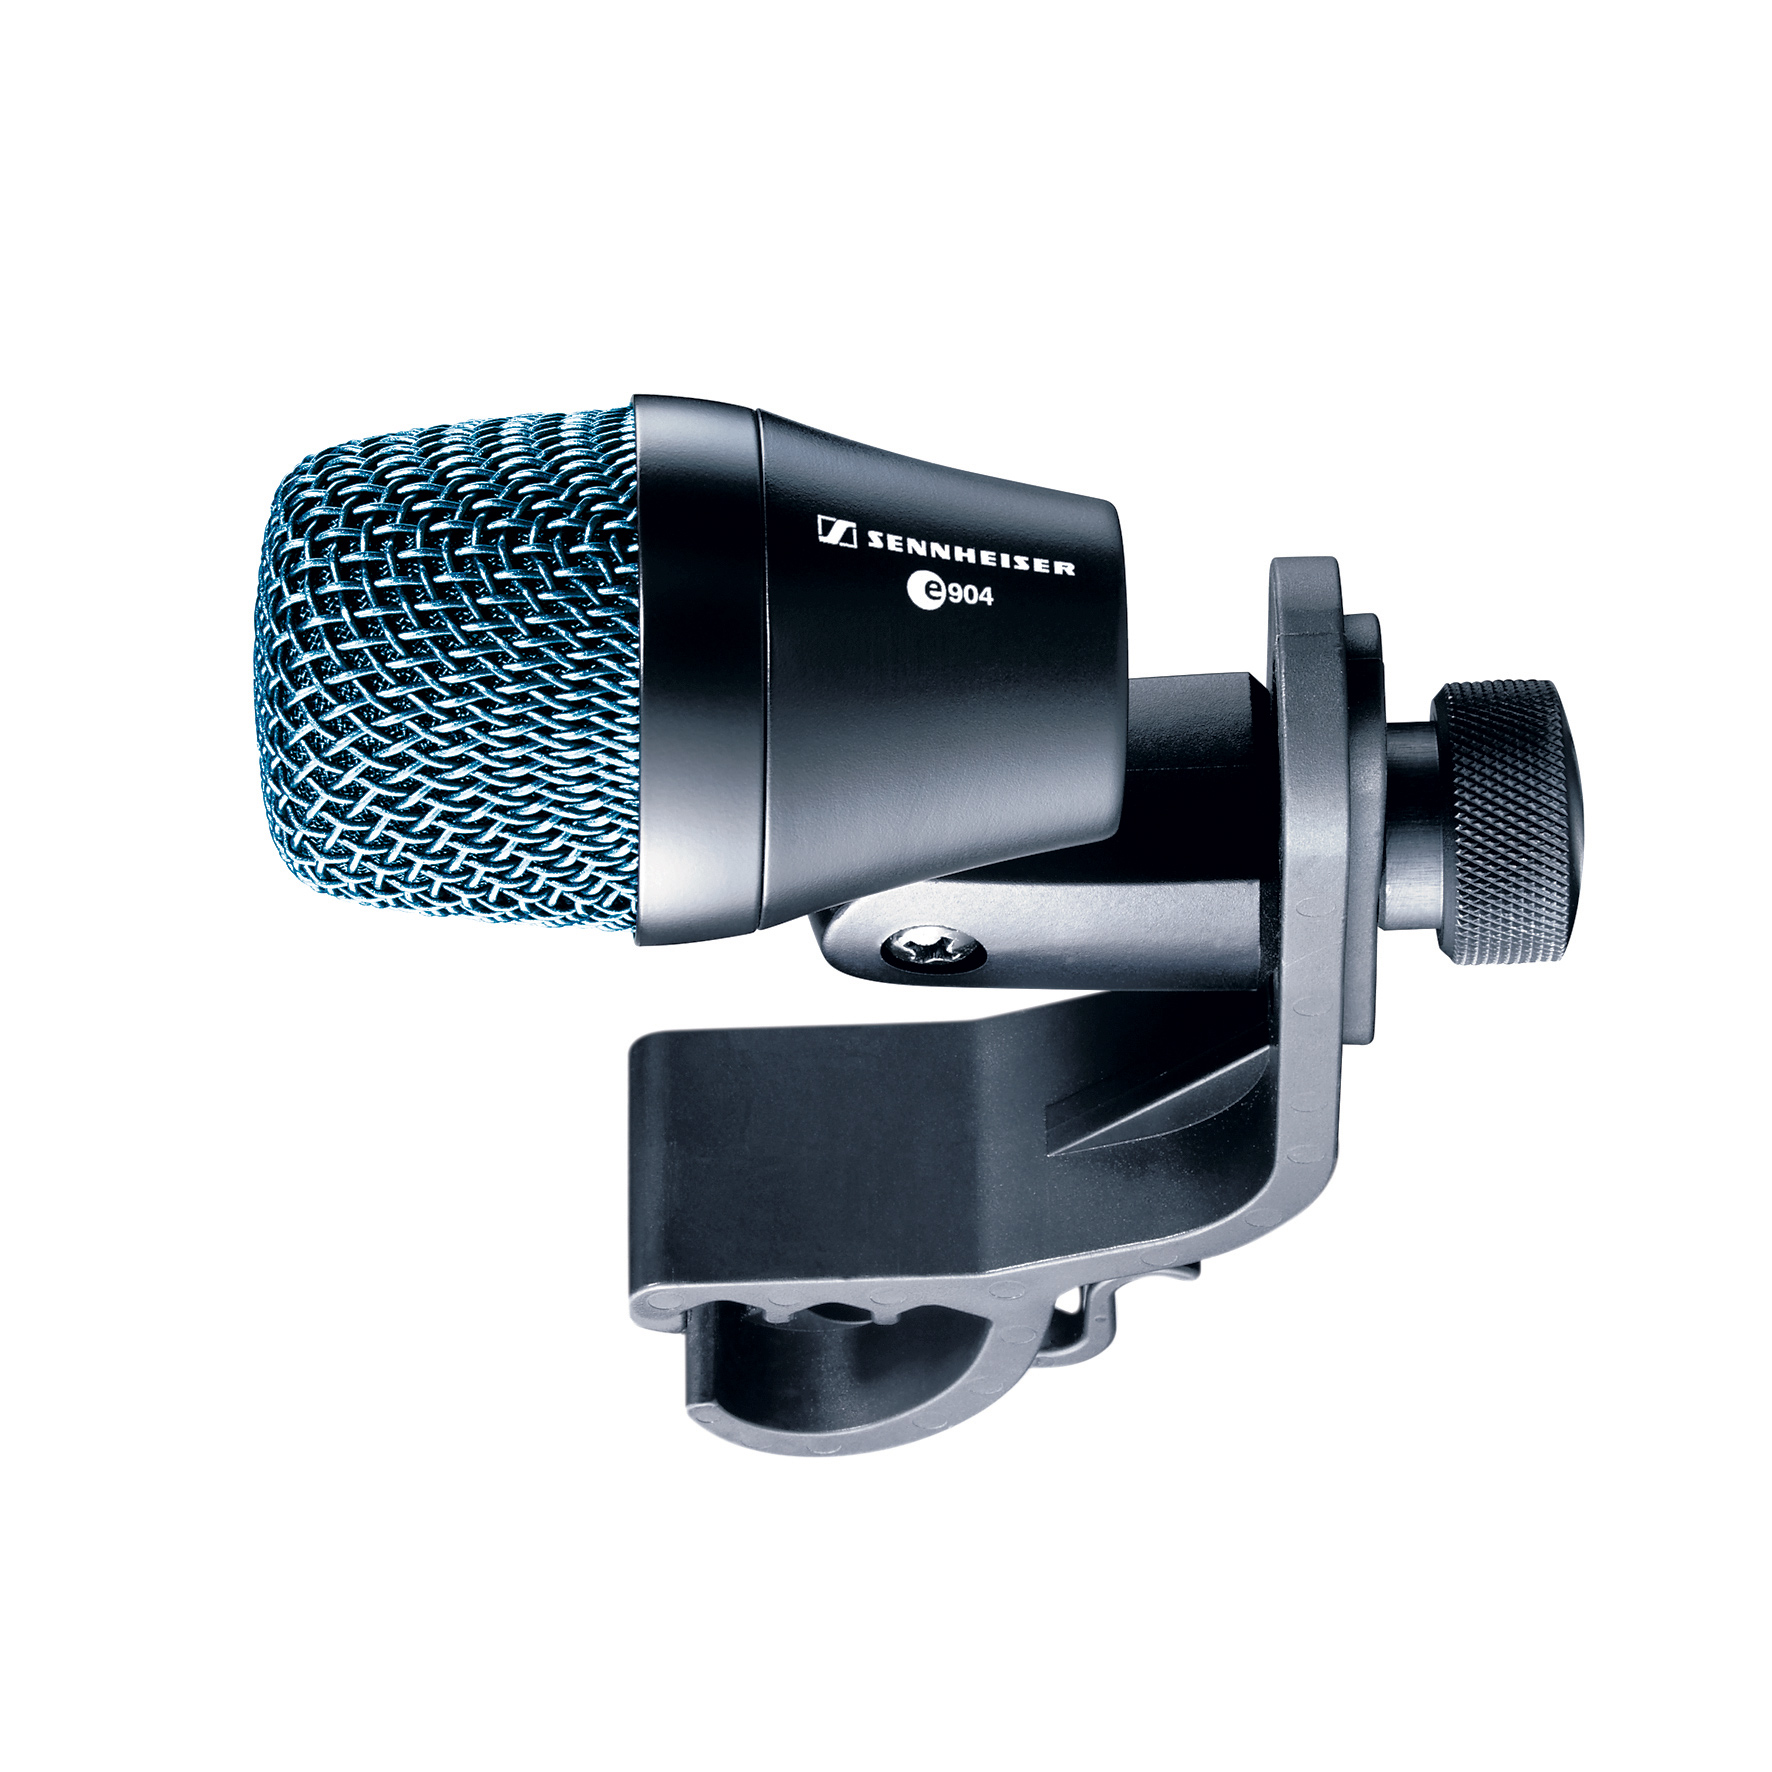 Sennheiser Sennheiser e904 Tom Microphone, with Clamp (Cardioid)